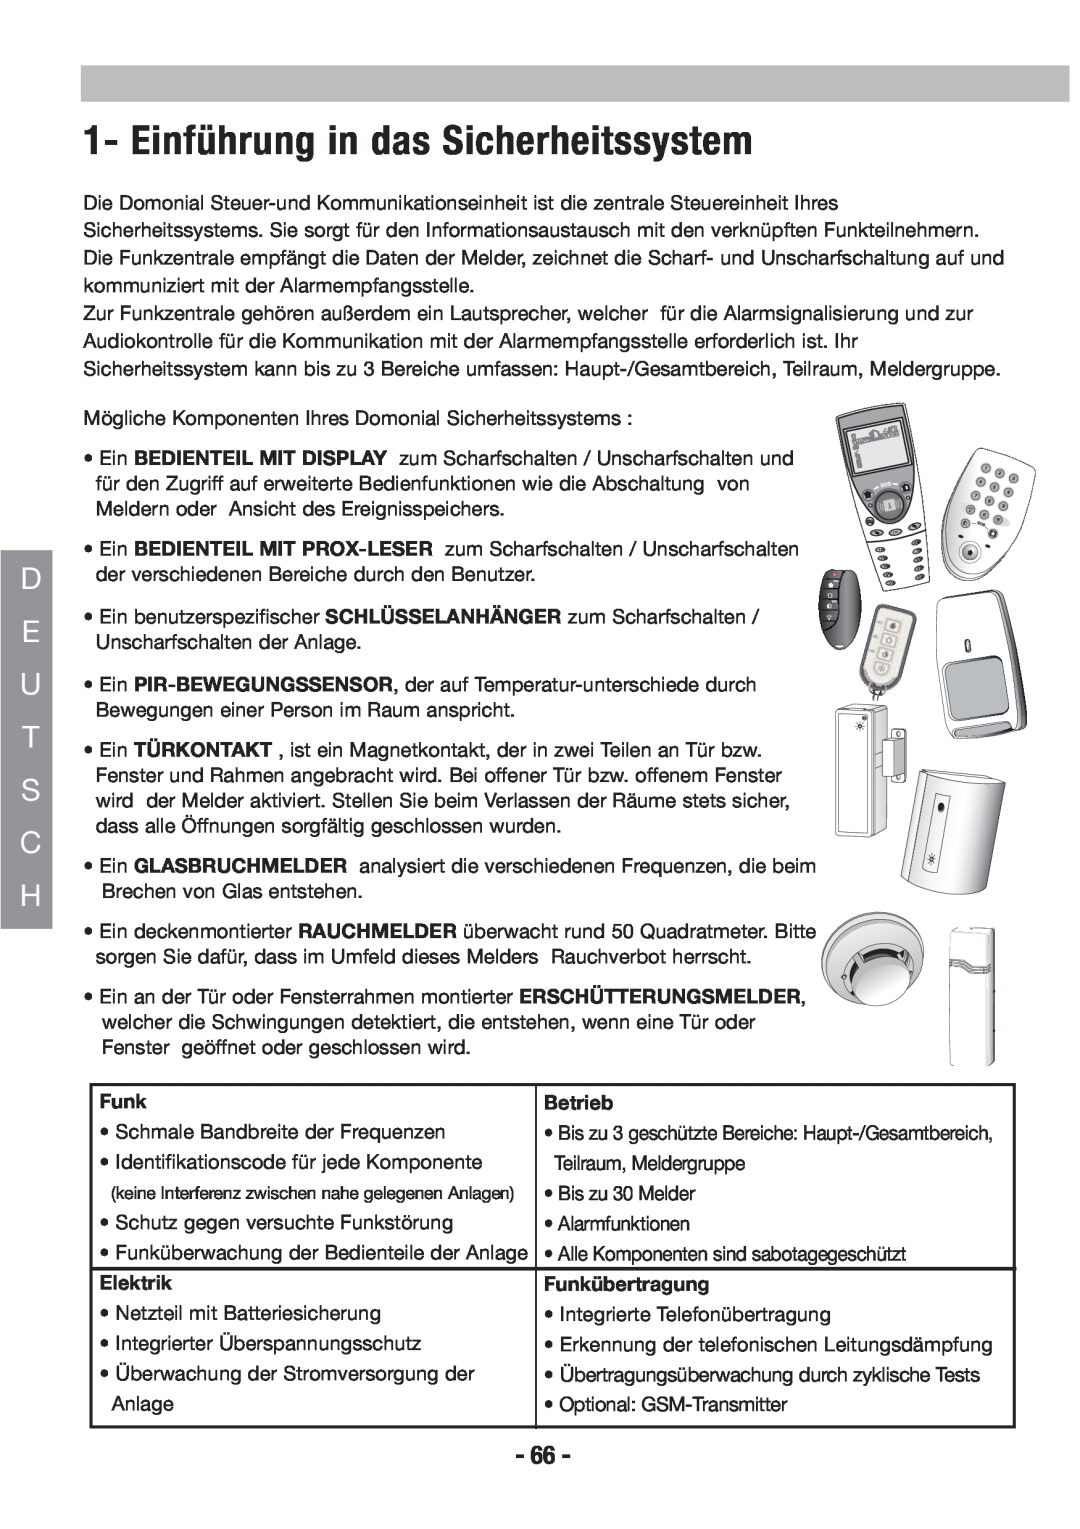 Honeywell EKZ008200B user manual Einführung in das Sicherheitssystem, Betrieb, Elektrik, Funkübertragung 